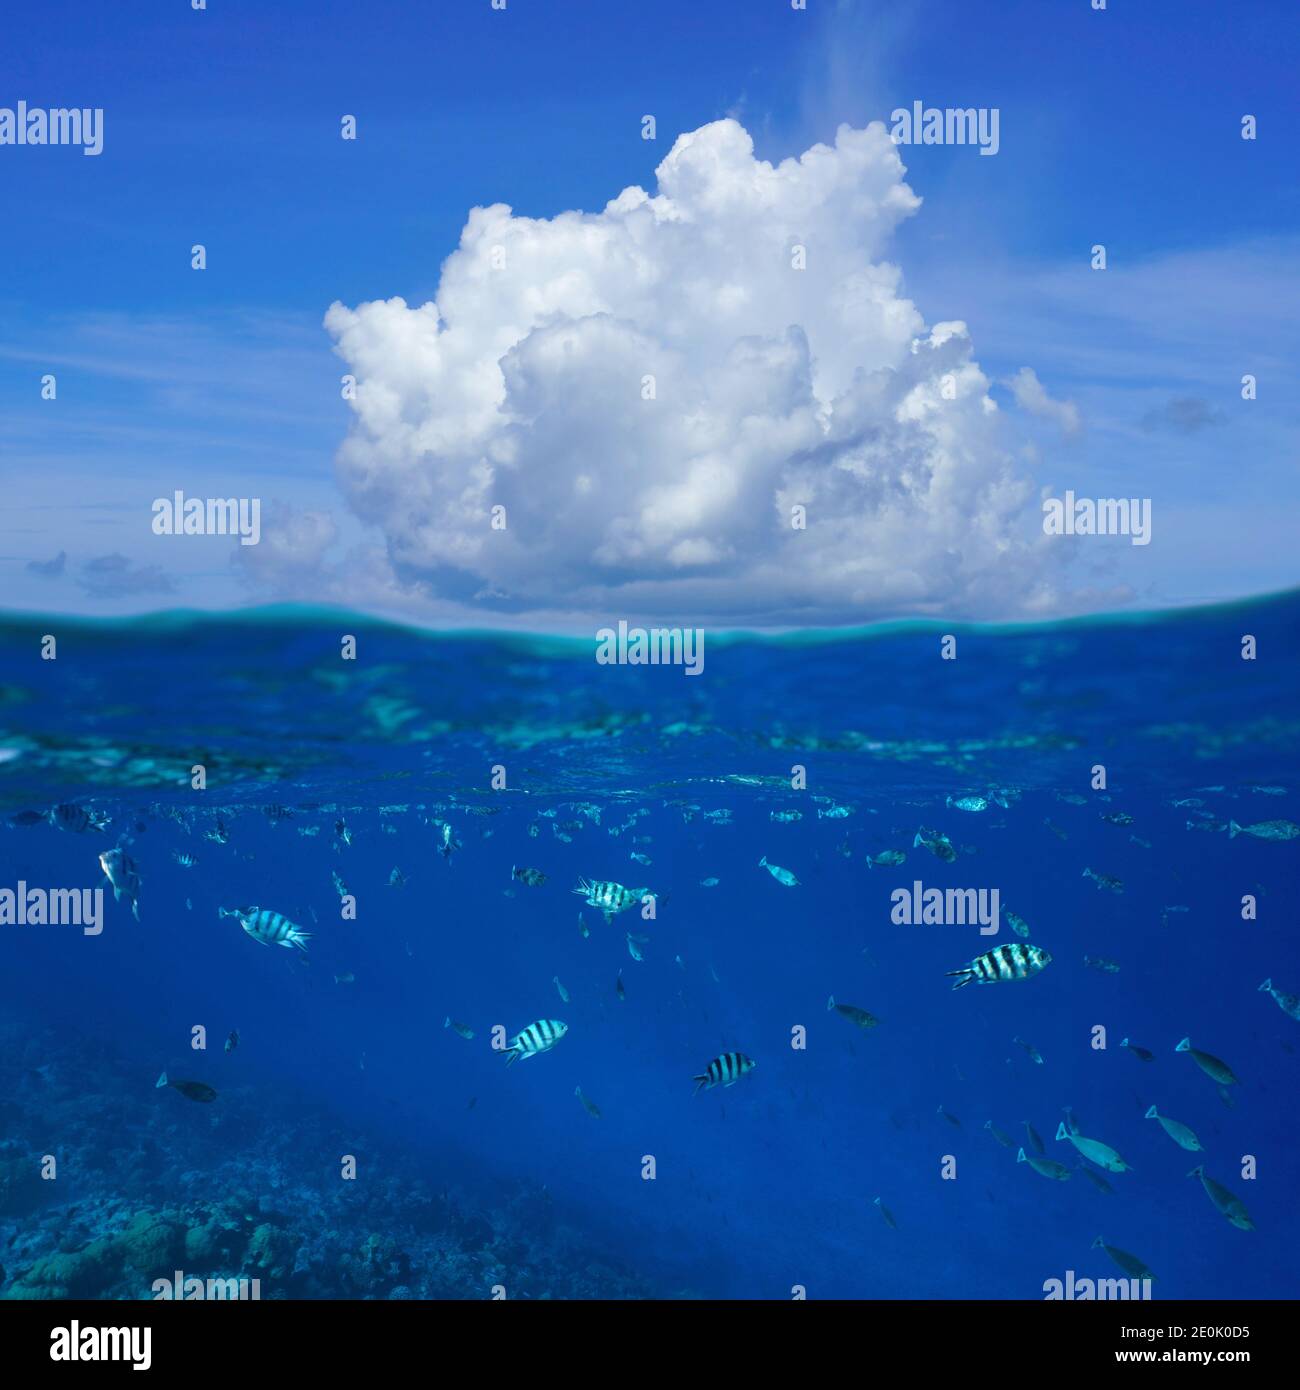 Un nuage au-dessus de la surface de la mer avec des poissons tropicaux sous l'eau, vue partagée sur et sous l'eau, océan Pacifique, Rangiroa, Tuamotus, Polynésie française Banque D'Images